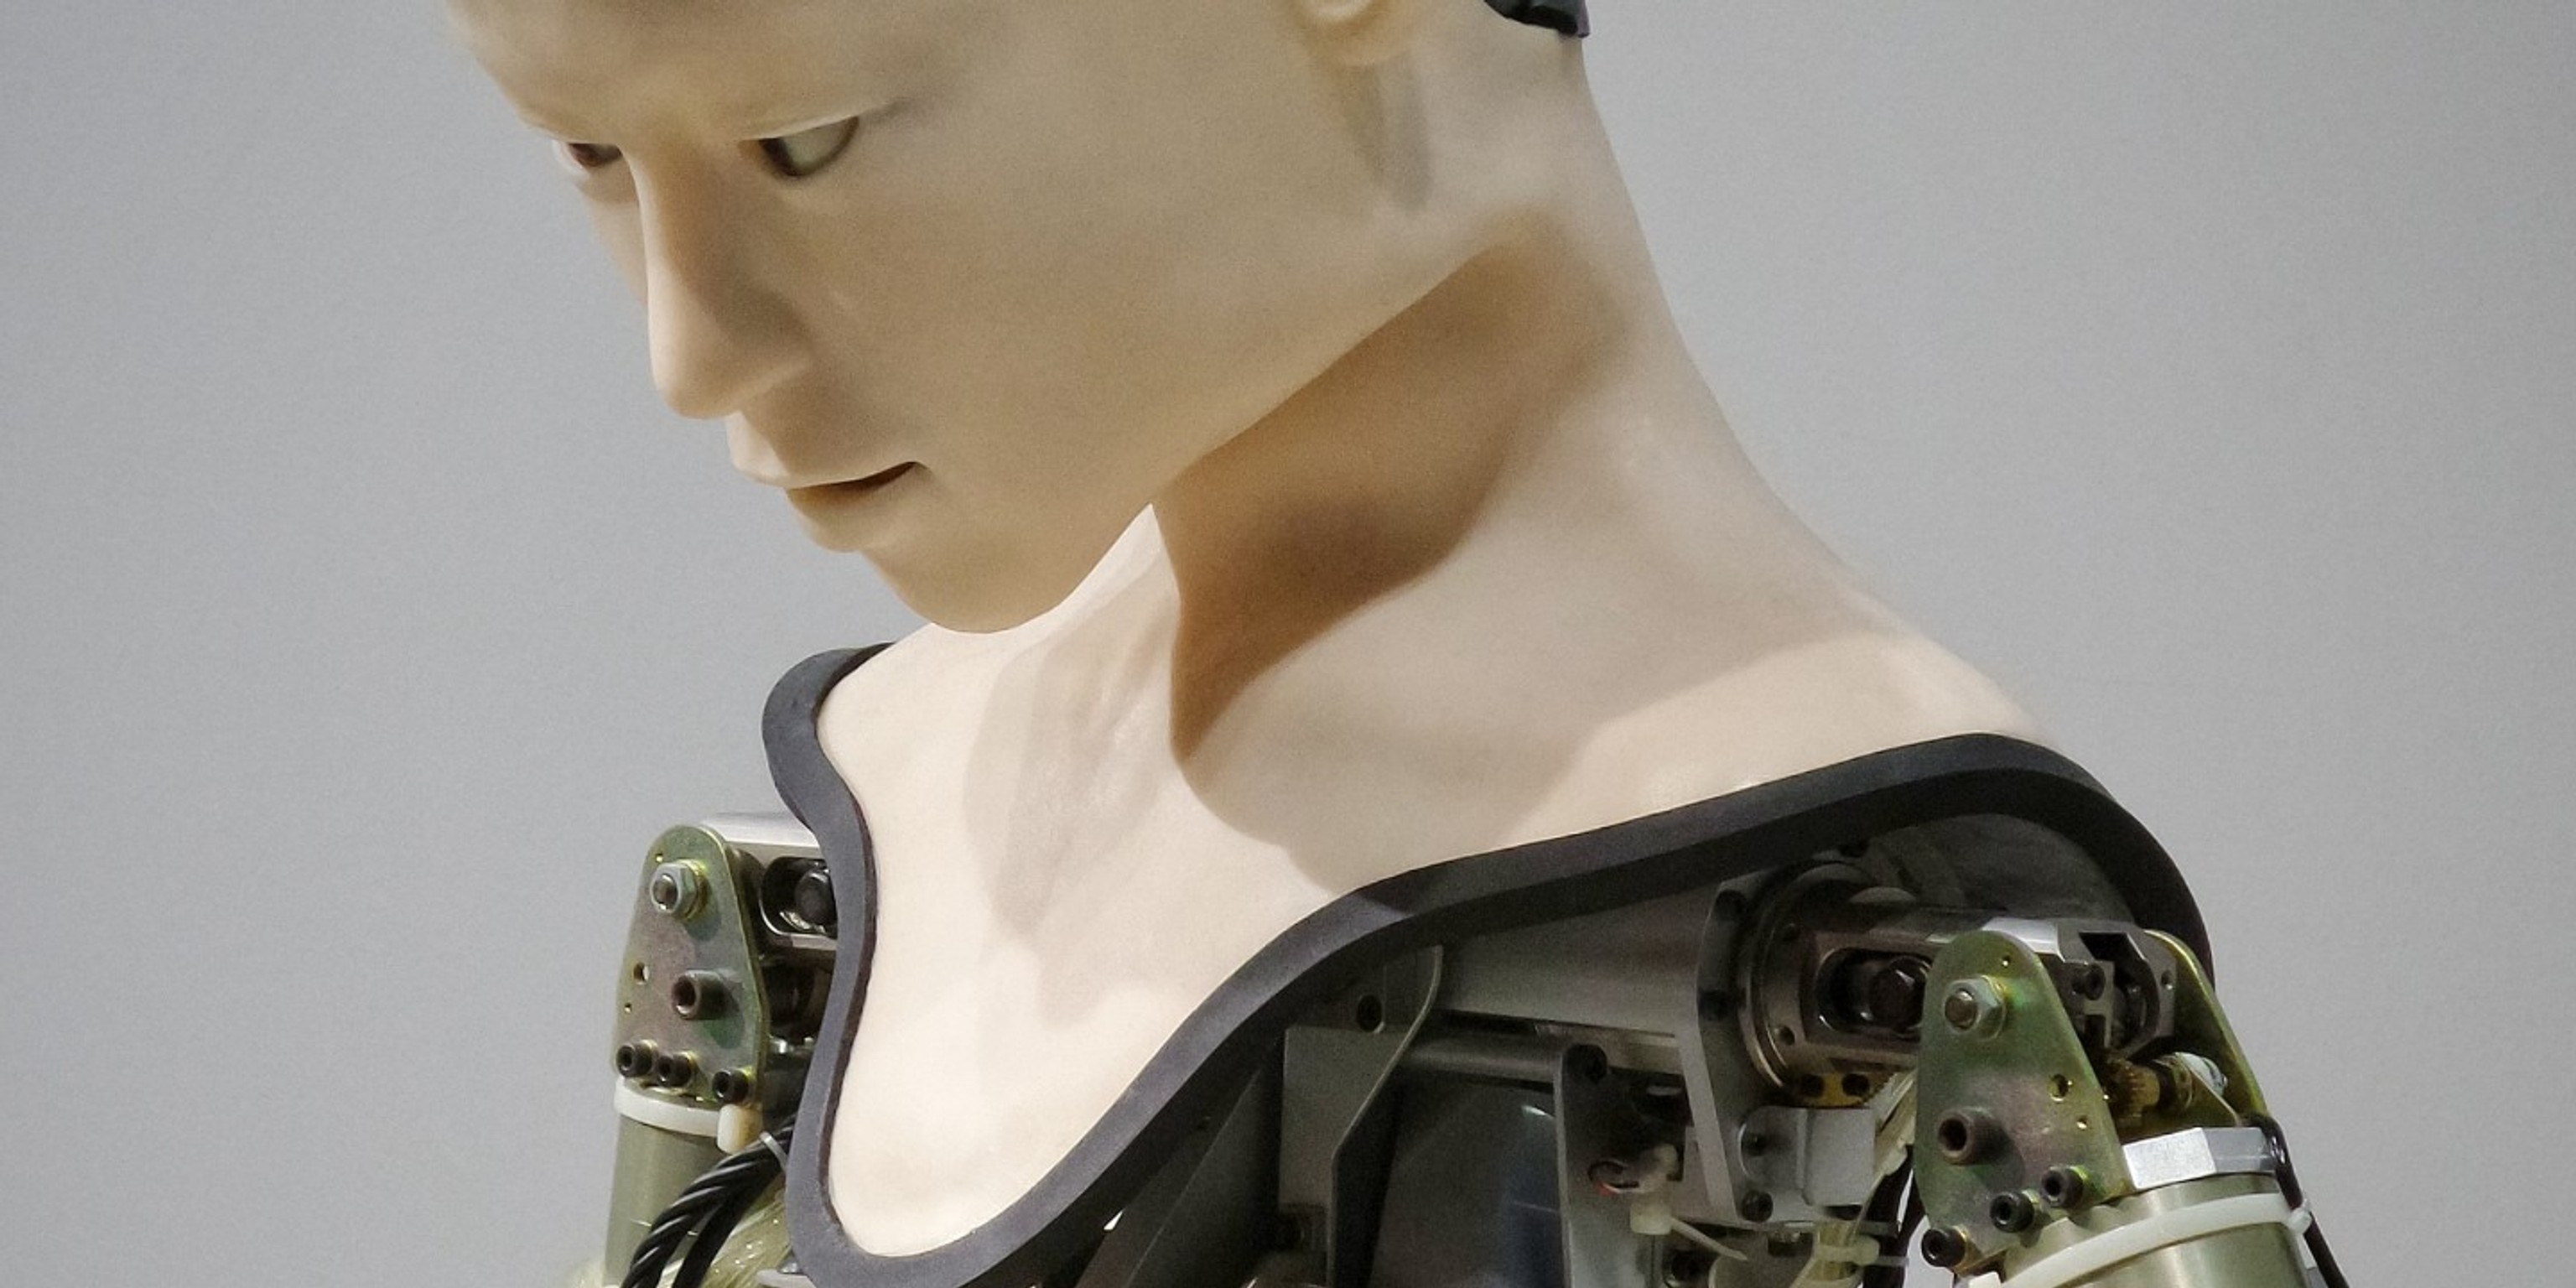 Consumerist, mundane, and uncanny futures with sex robots